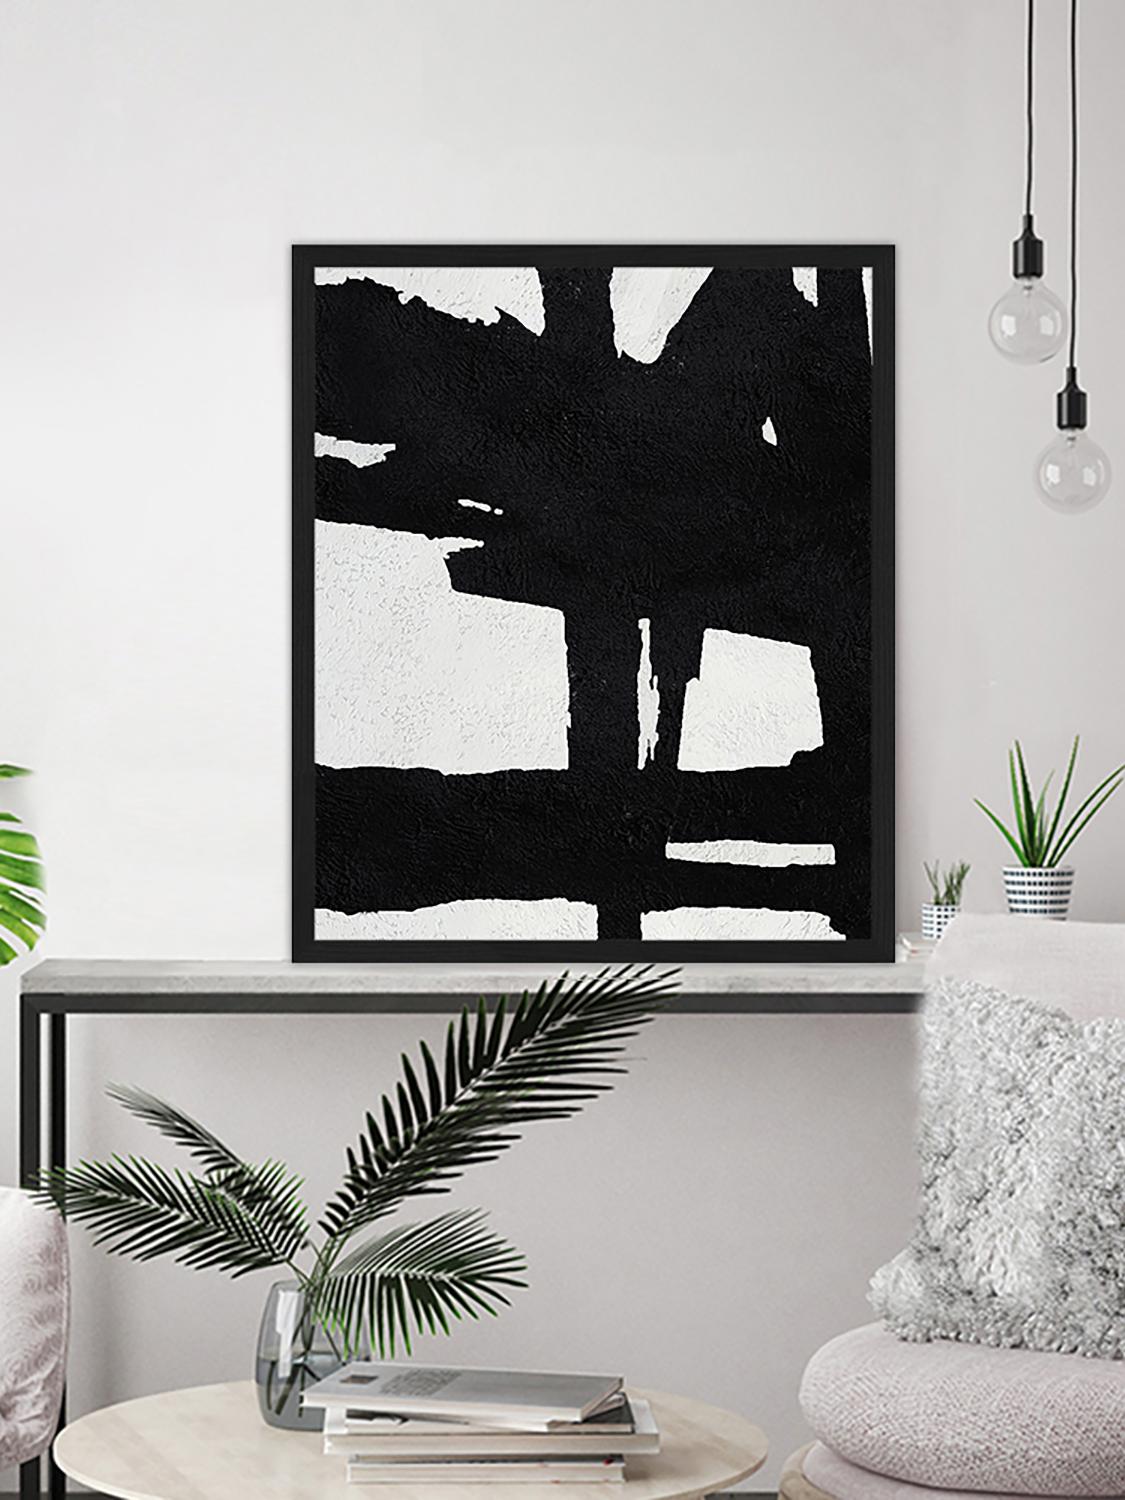 Gerahmter Digitaldruck Abstract Black, Bild: Digitaldruck auf Papier, , Rahmen: Holz, lackiert, Front: Plexiglas, Schwarz, Weiß, 53 x 63 cm